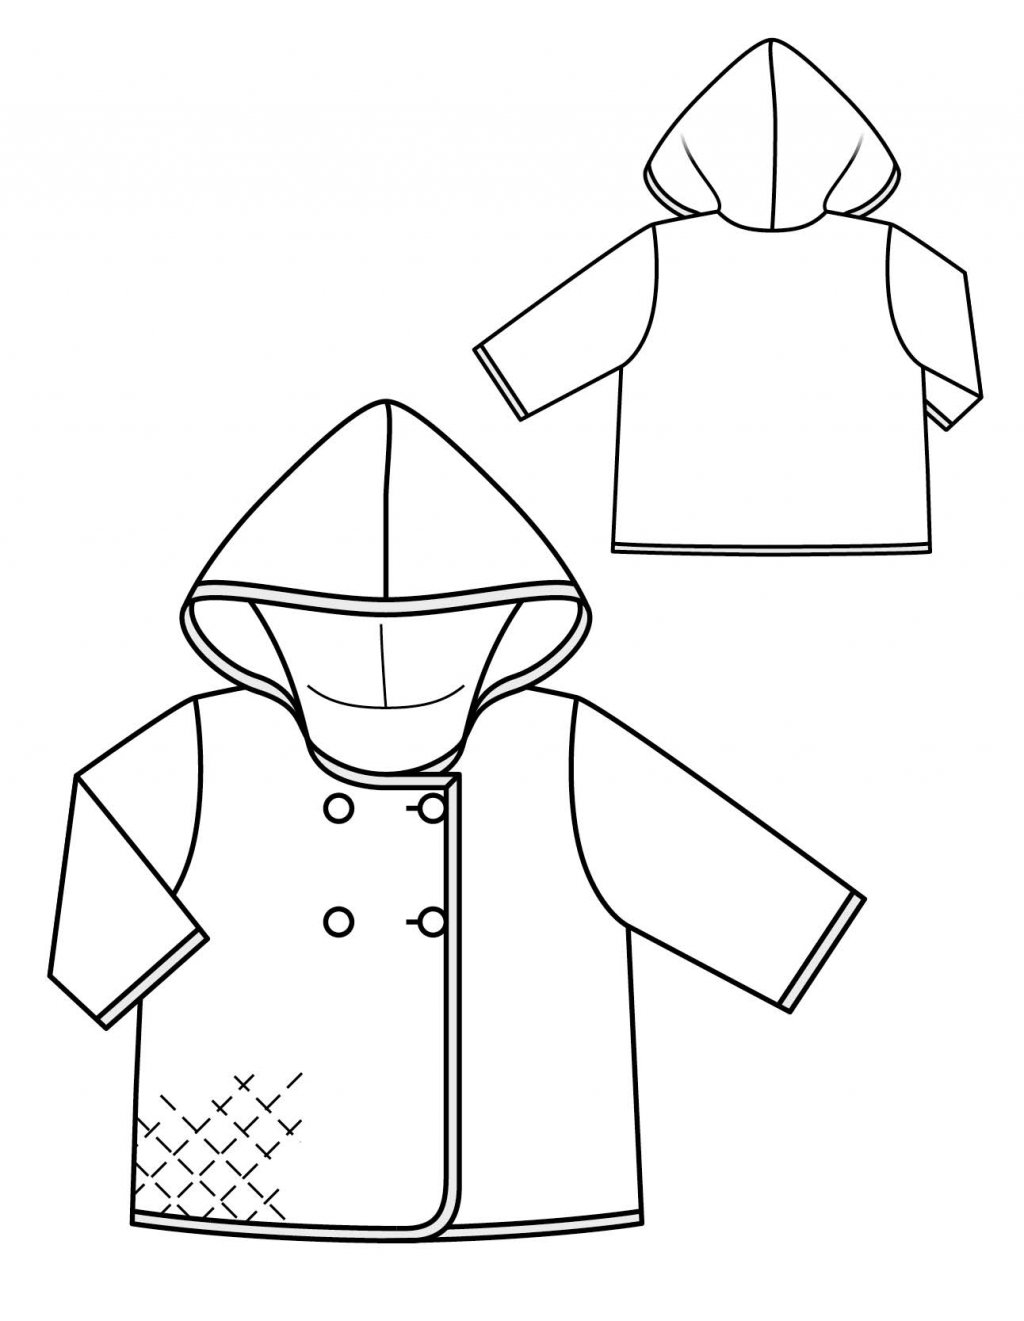 Model 2: Kabátek s kapucí